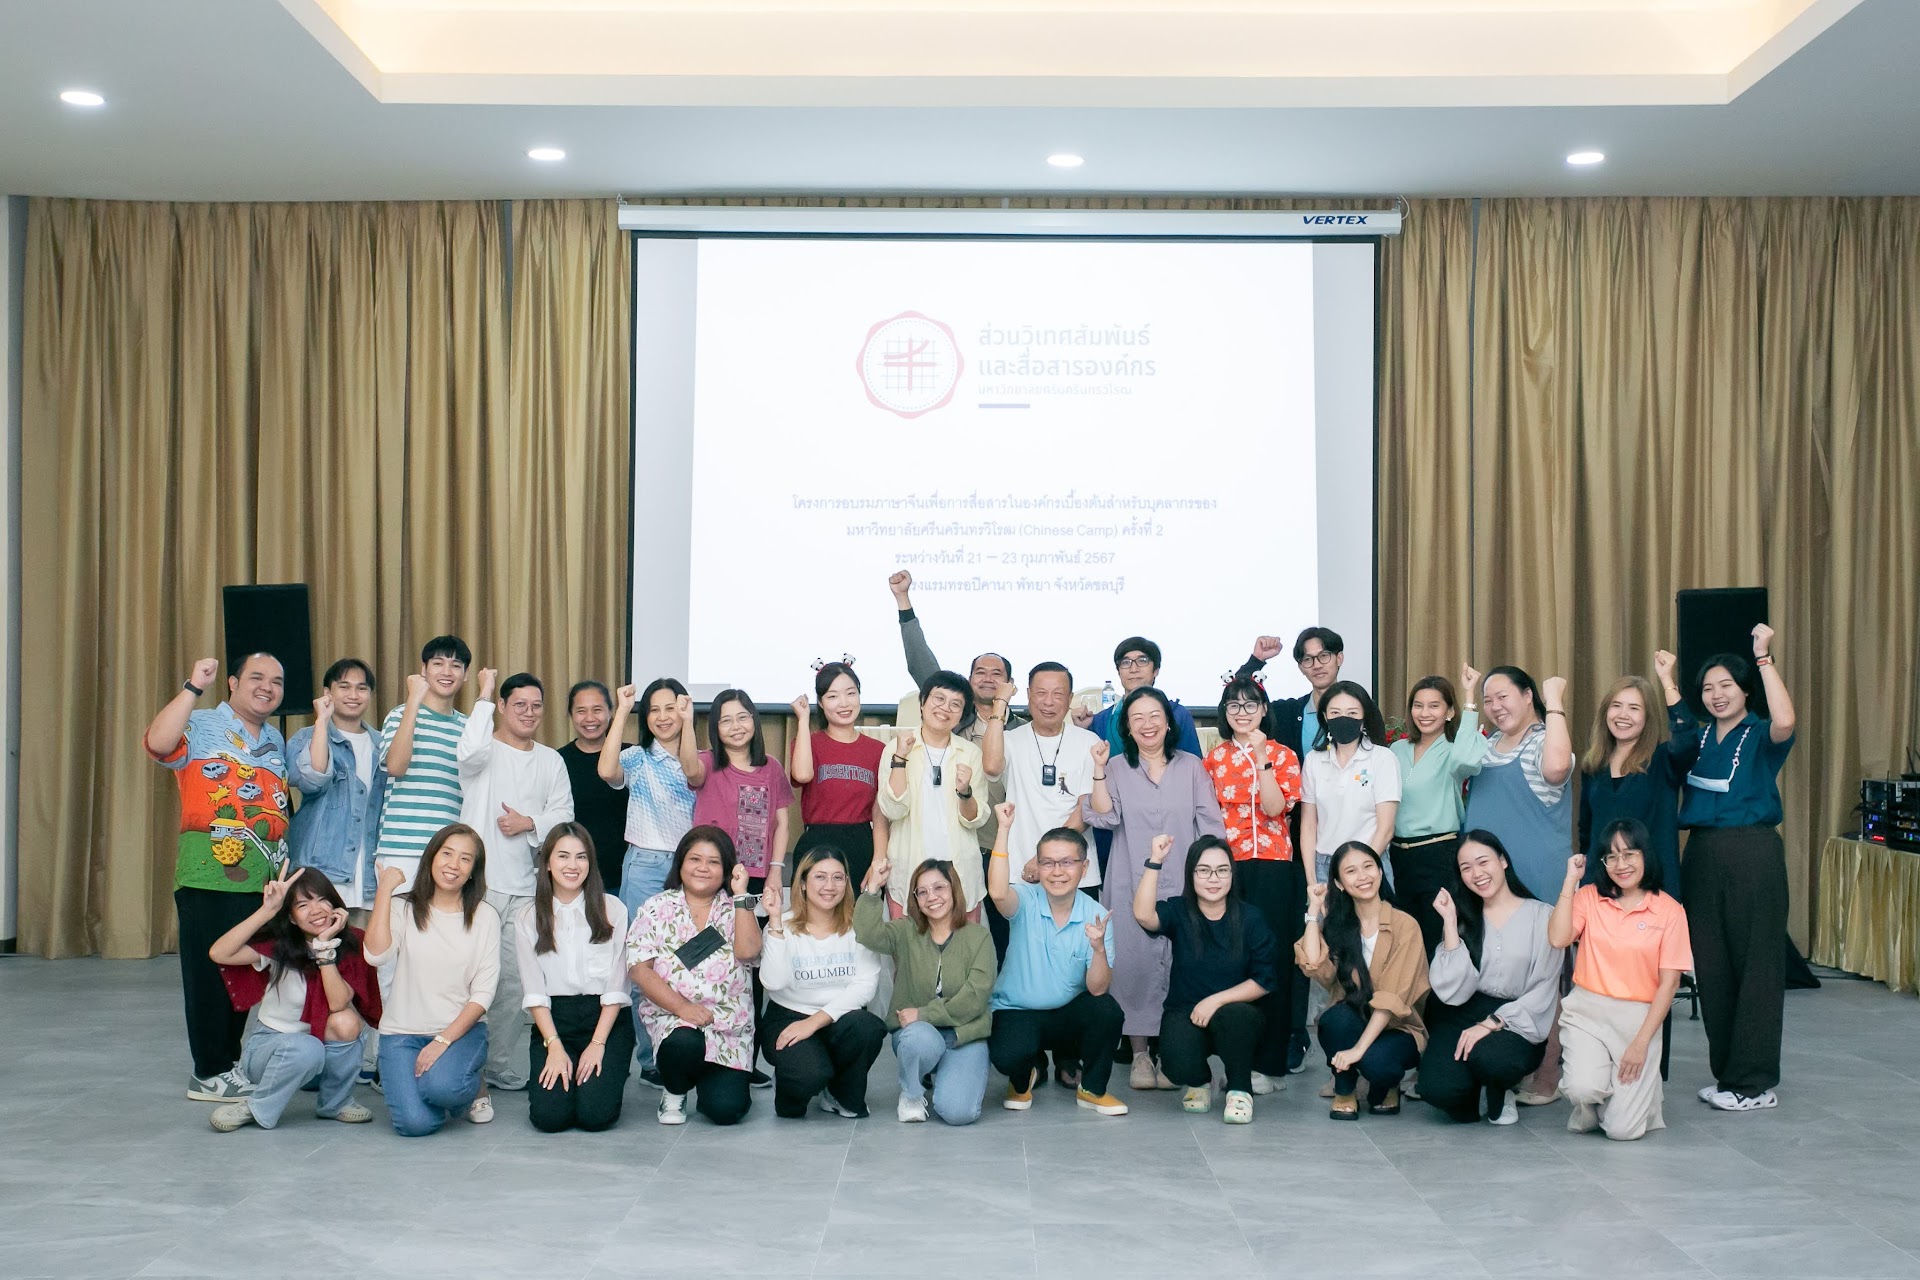 โครงการอบรมภาษาจีนเพื่อการสื่อสารในองค์กรเบื้องต้น สำหรับบุคลากรของมหาวิทยาลัยศรีนครินทรวิโรฒ (Chinese Camp) ครั้งที่ 2